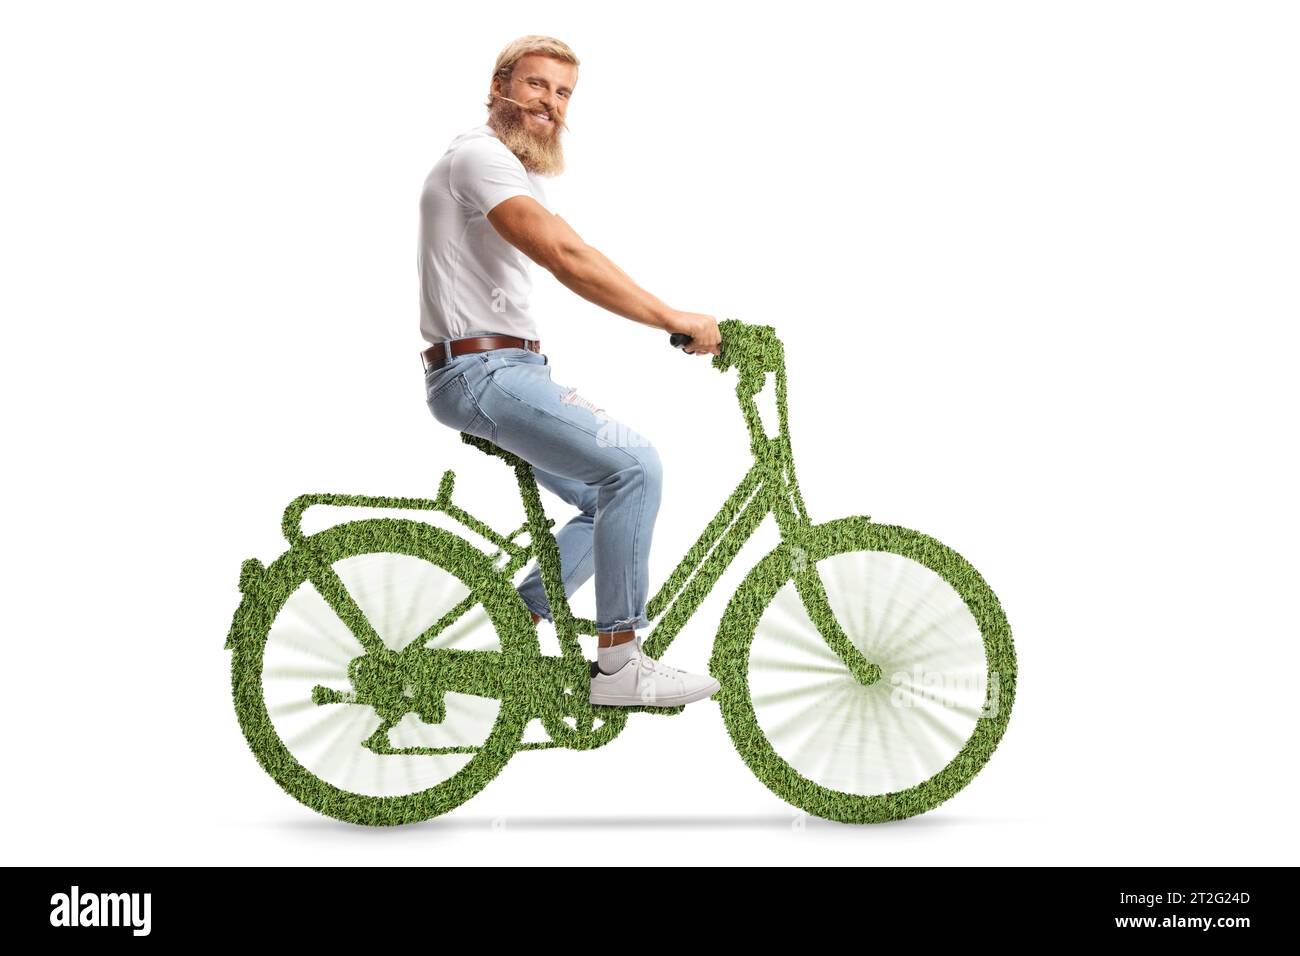 Bärtiger Kerl mit Schnurrbart, der auf einem grünen Öko-Fahrrad fährt und in die Kamera lächelt, isoliert auf weißem Hintergrund Stockfoto